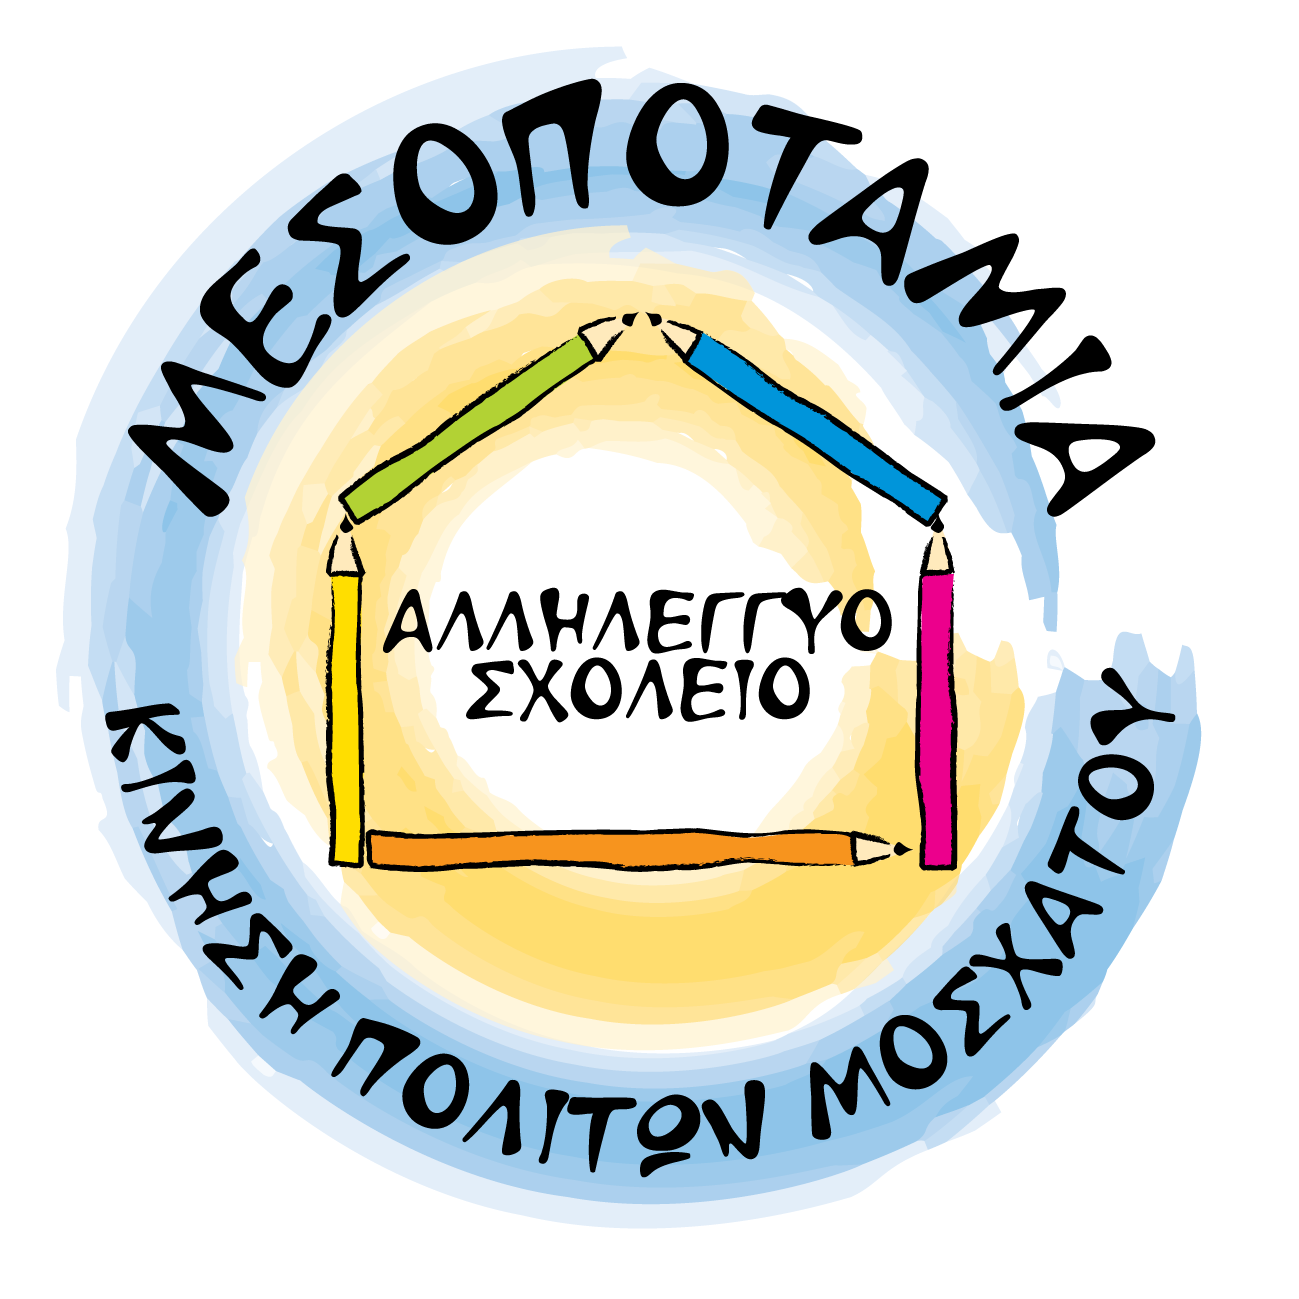 Αλληλέγγυο Σχολείο Μεσοποταμίας | Όροι Χρήσης logo